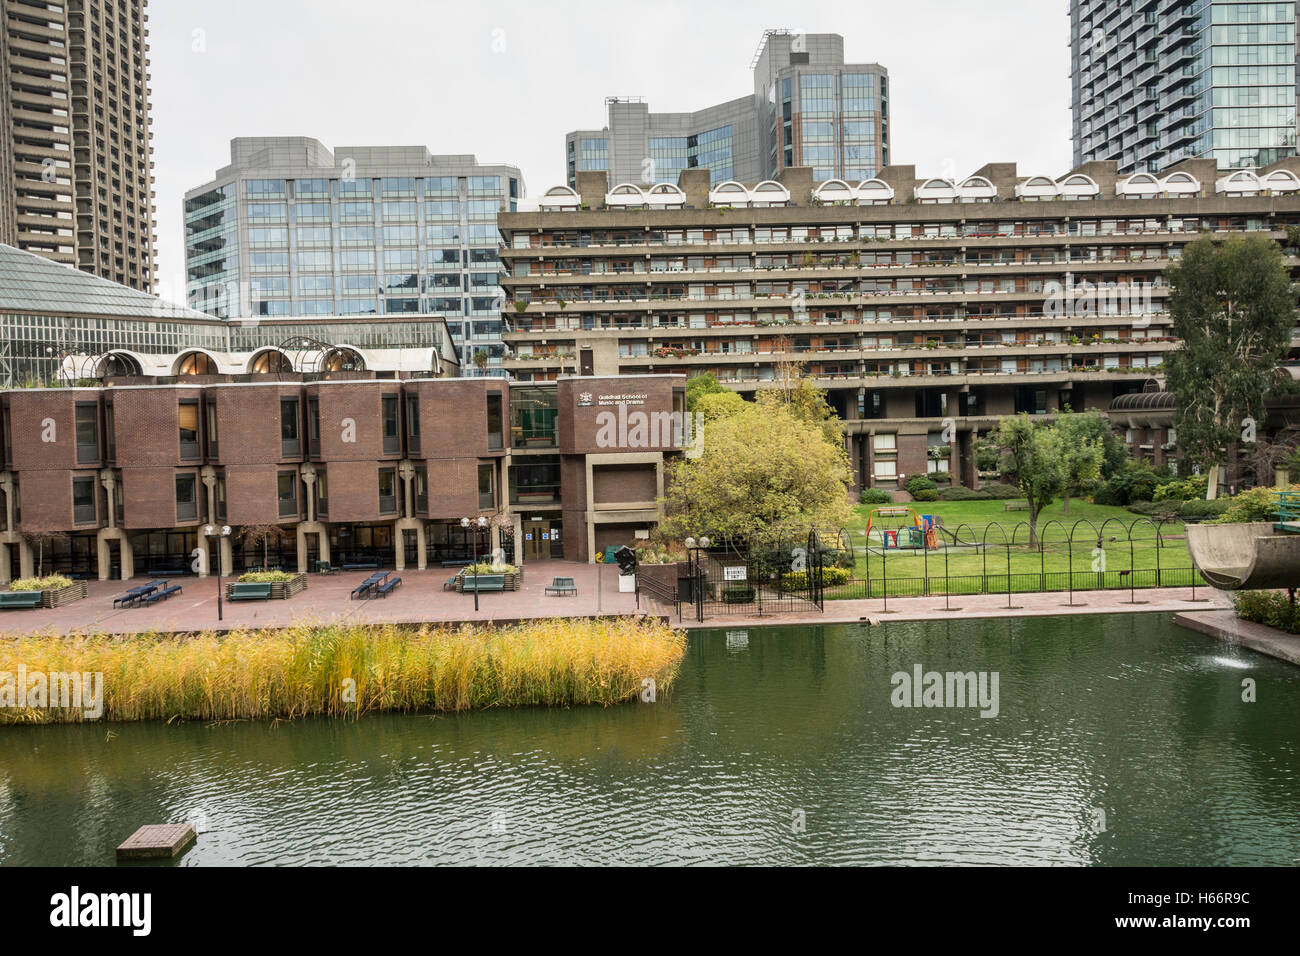 Le Barbican ensemble immobilier dans la ville de London, UK Banque D'Images